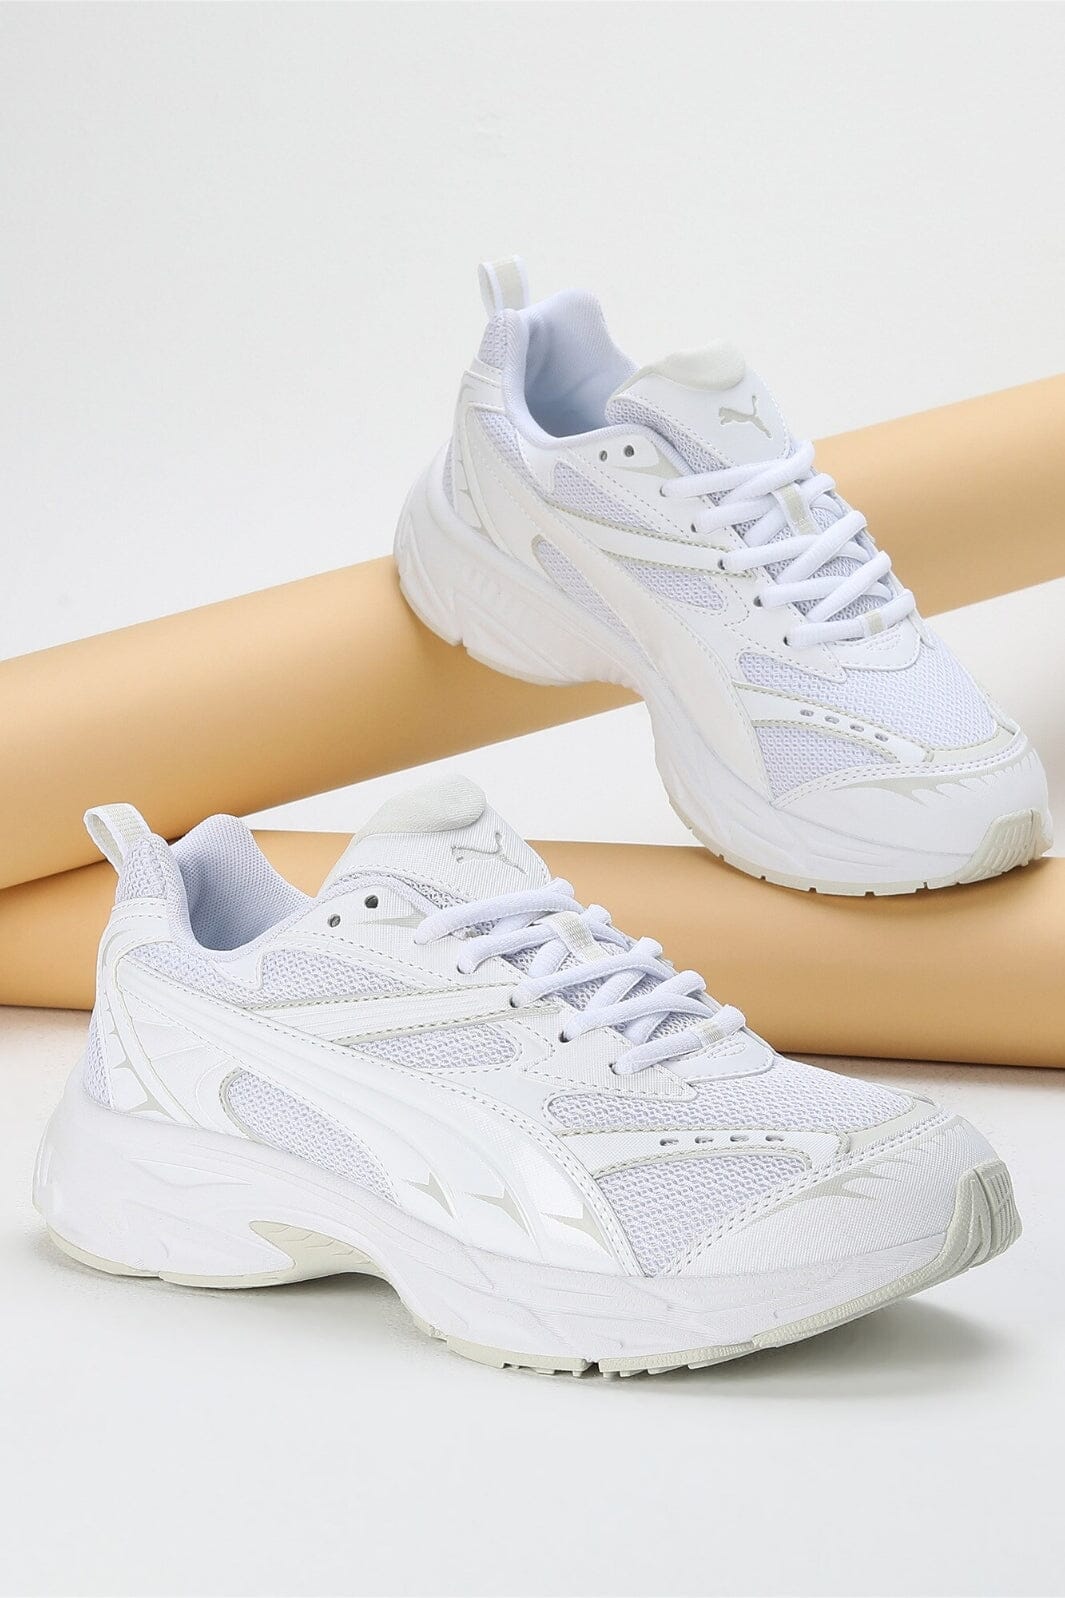 Puma - Puma Morphic Base - White 1 Sneakers 